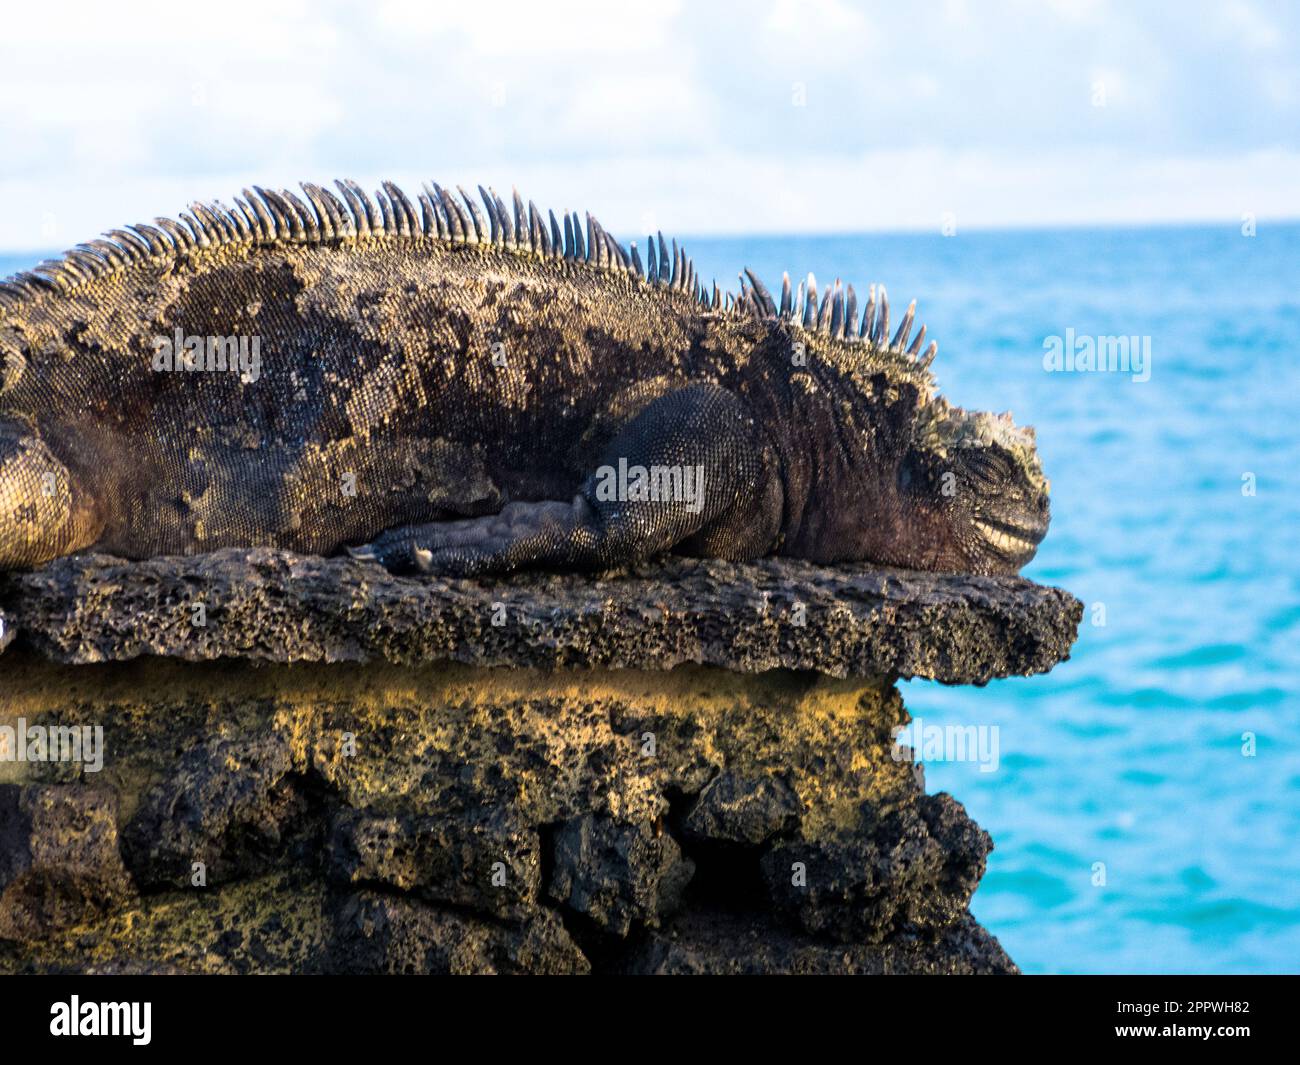 Marine Iguana sunning itself, Santa Cruz, Galapagos Islands, Ecuador. Stock Photo